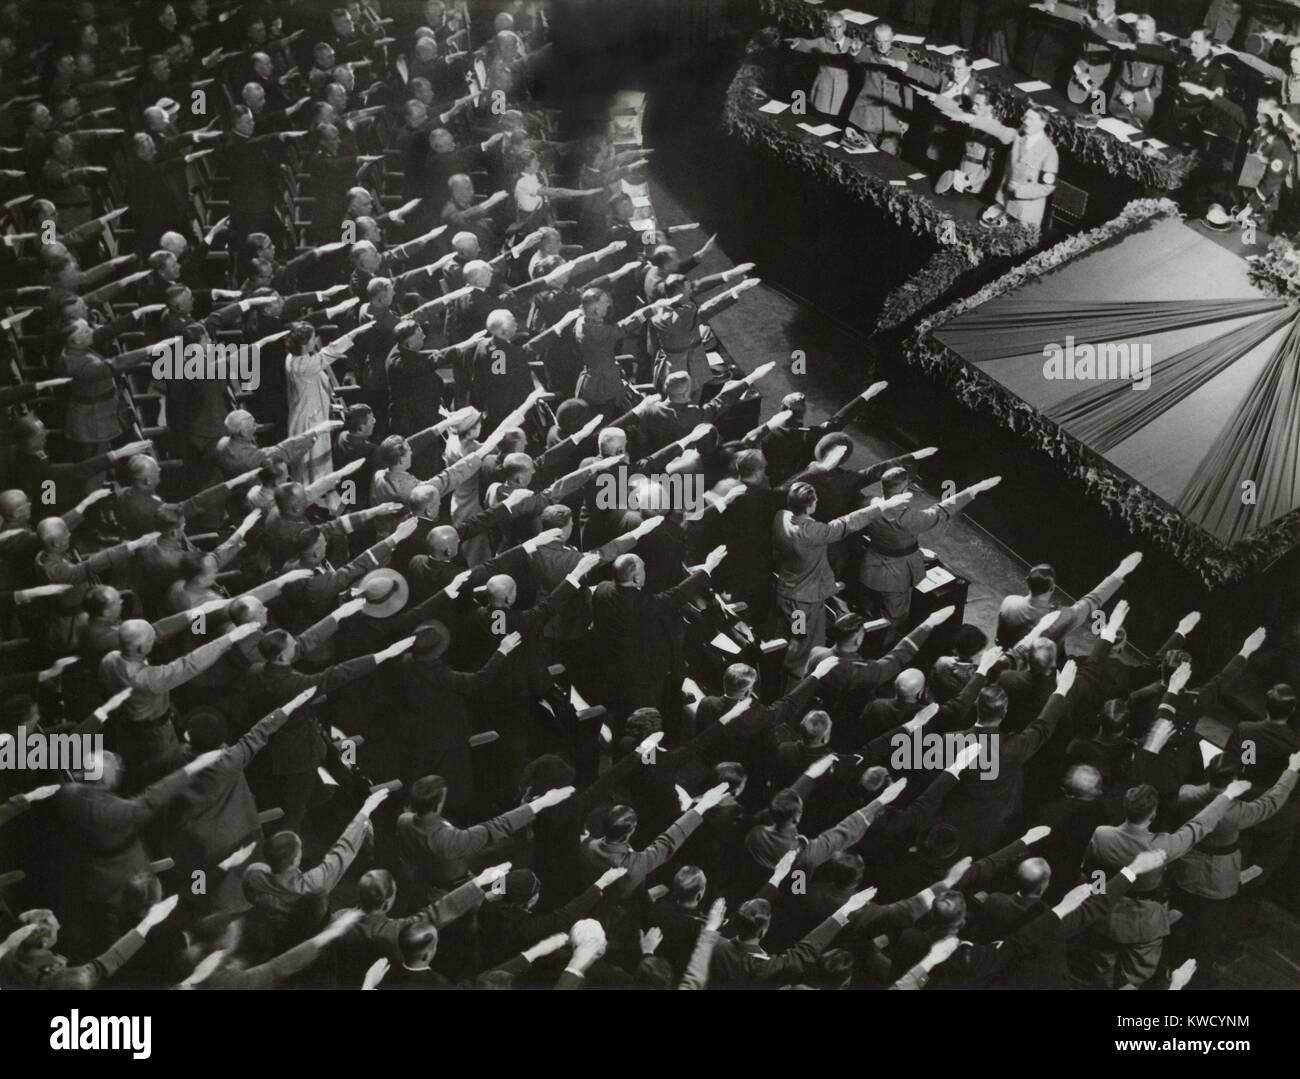 Die Teilnehmer geben Hitler den Hitlergruß während der Nation Hymne, Oktober 9, 1935. Sie waren auf der Kroll Oper in Berlin, an den Winter Relief festliche zur Finanzierung gemeinnütziger Arbeit (BSLOC 2017 2 69) organisieren. Stockfoto